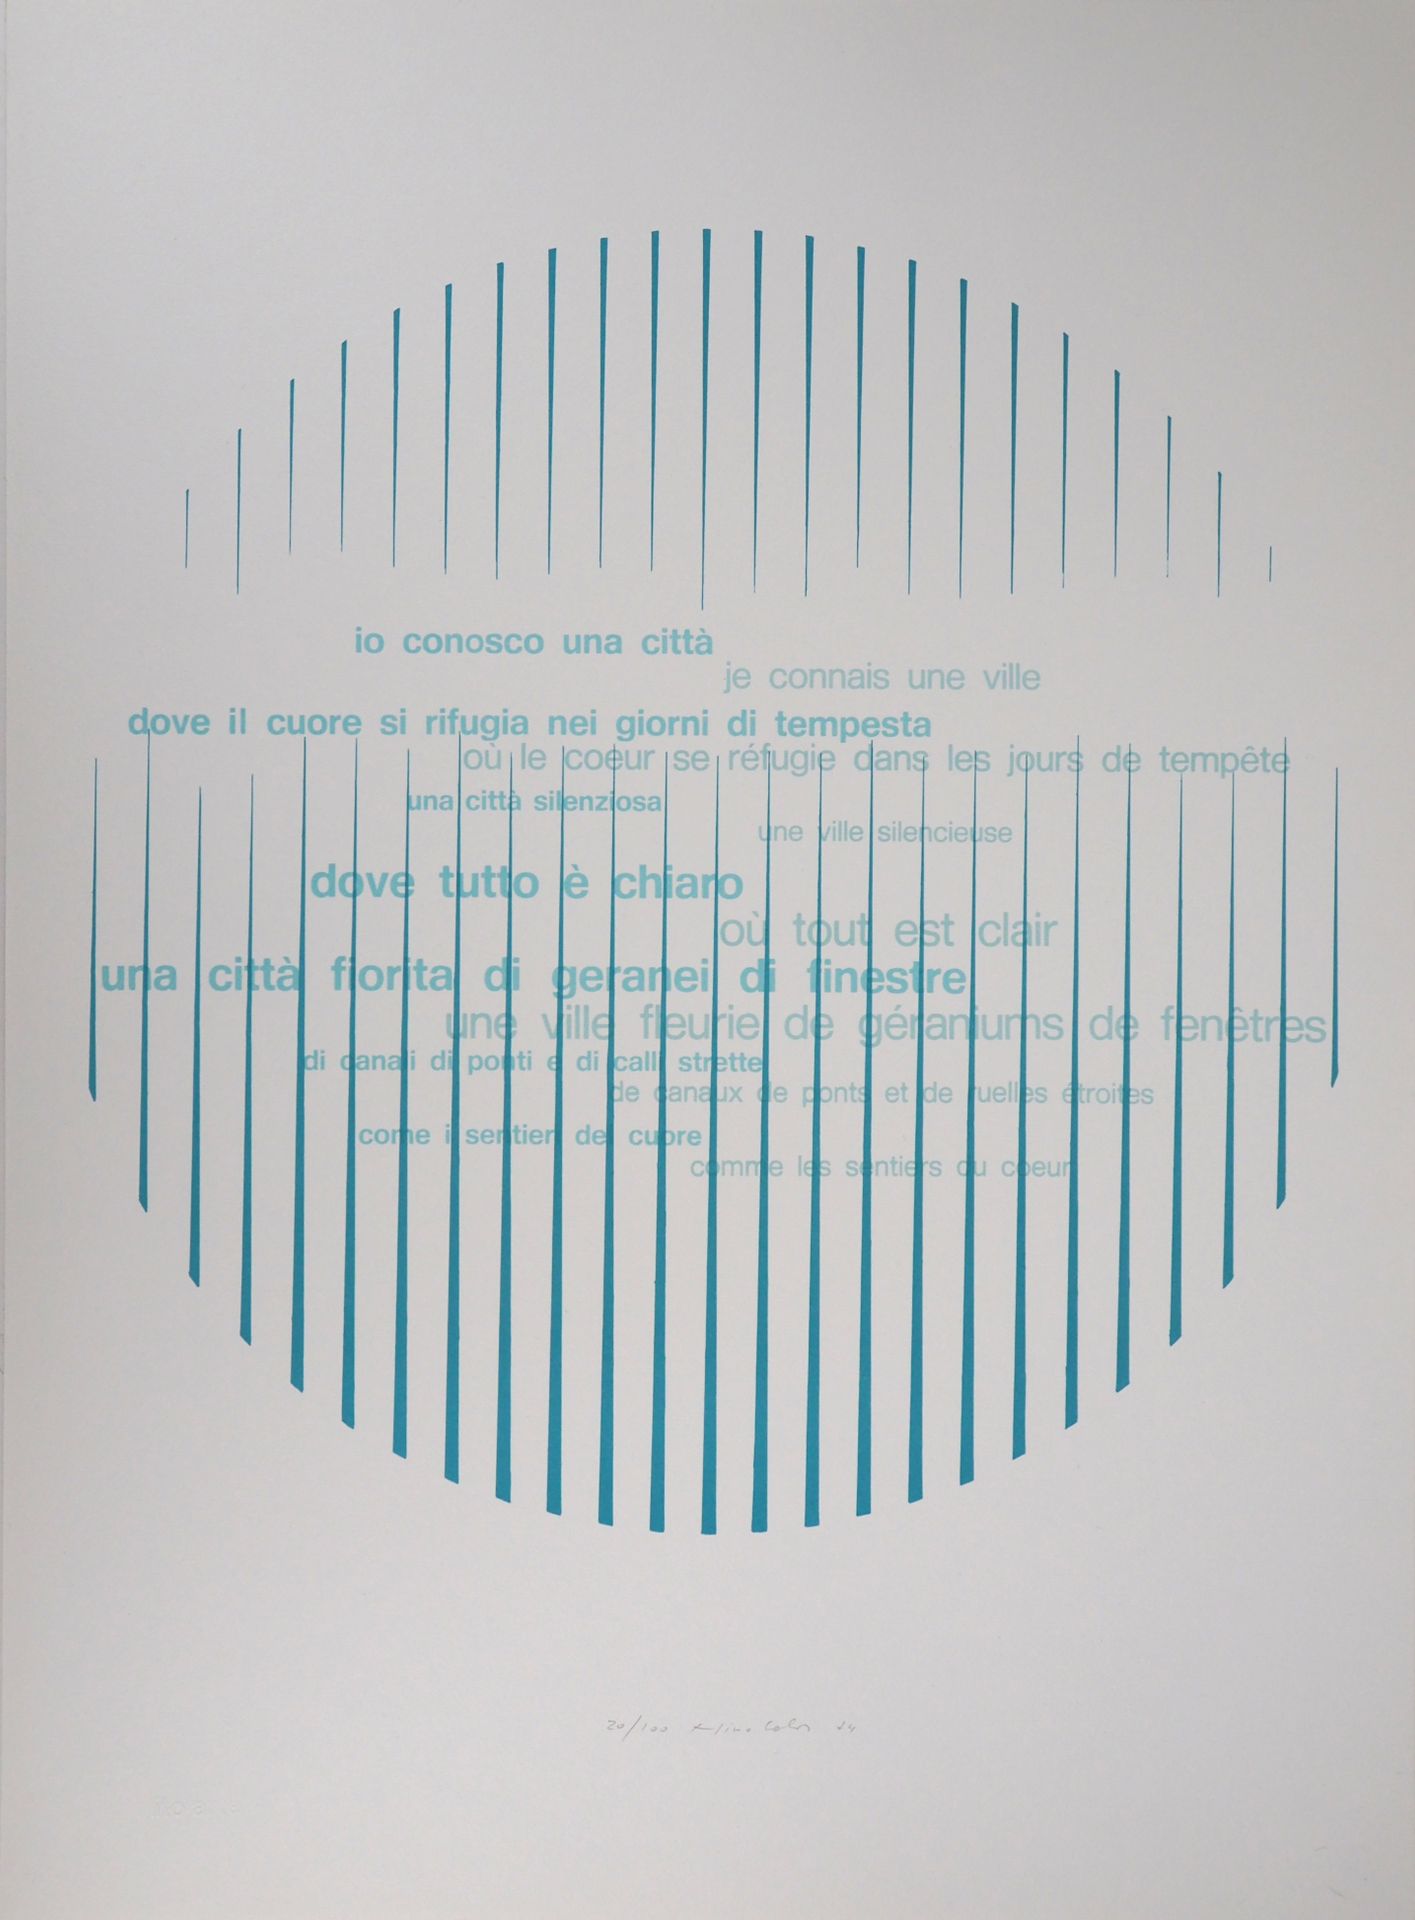 Nino CALOS 尼诺-卡洛斯

动感的诗，1974年

原始石版画

用铅笔签名并注明日期

牛皮纸上74.5 x 54.5厘米

编号为20/100

&hellip;